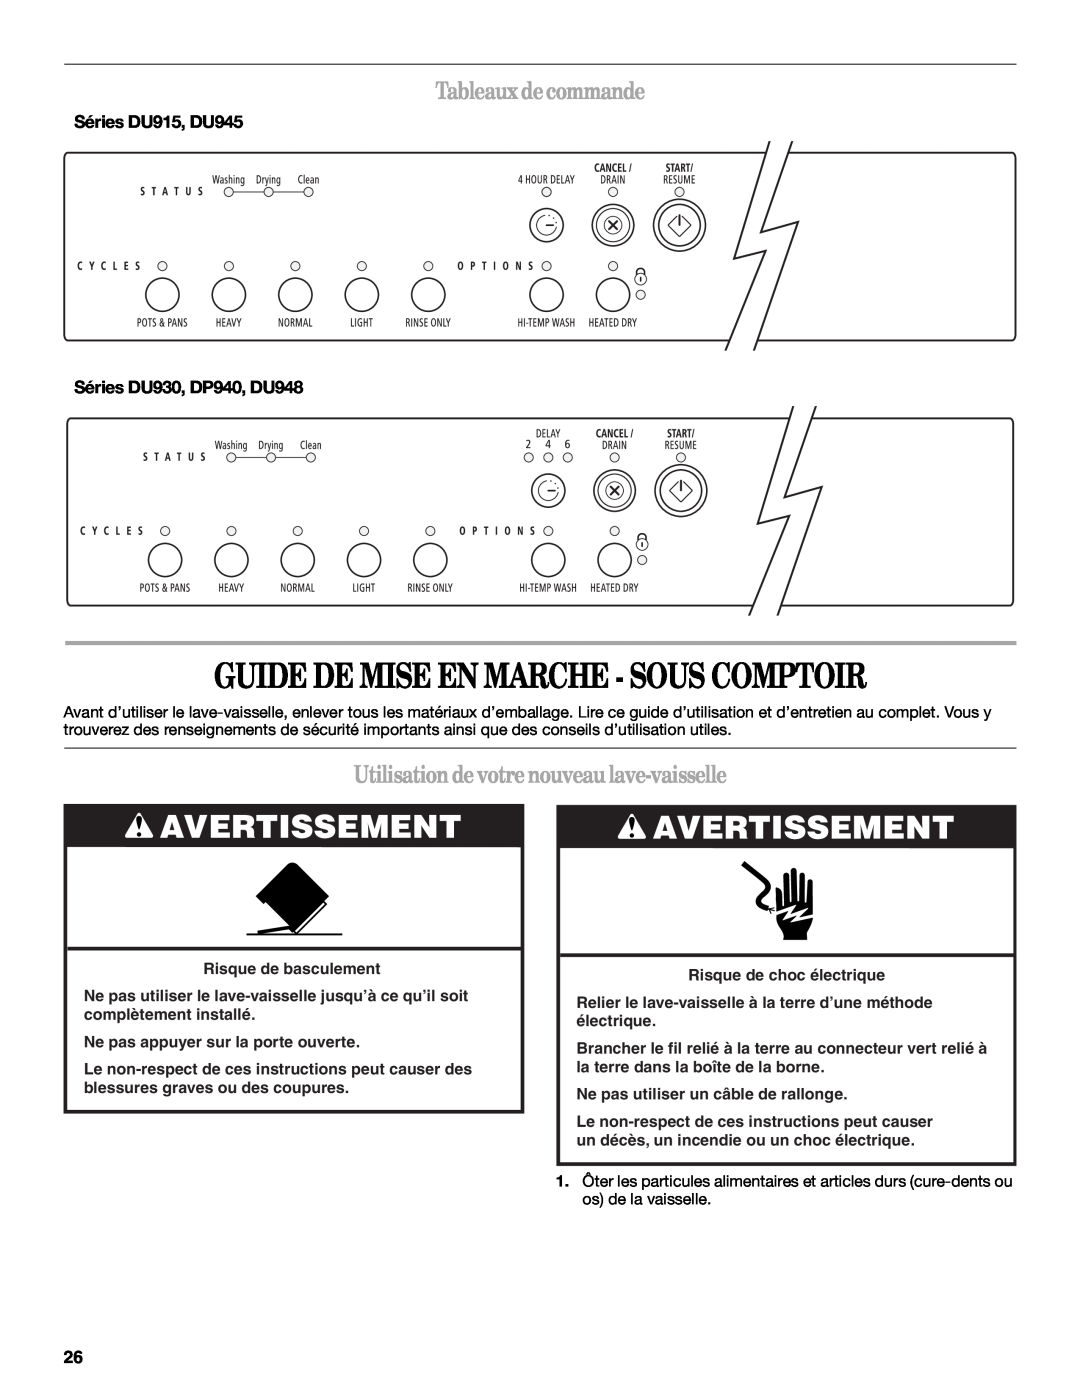 Whirlpool DP940PWS manual Guide De Mise En Marche - Sous Comptoir, Avertissement, Tableauxdecommande 